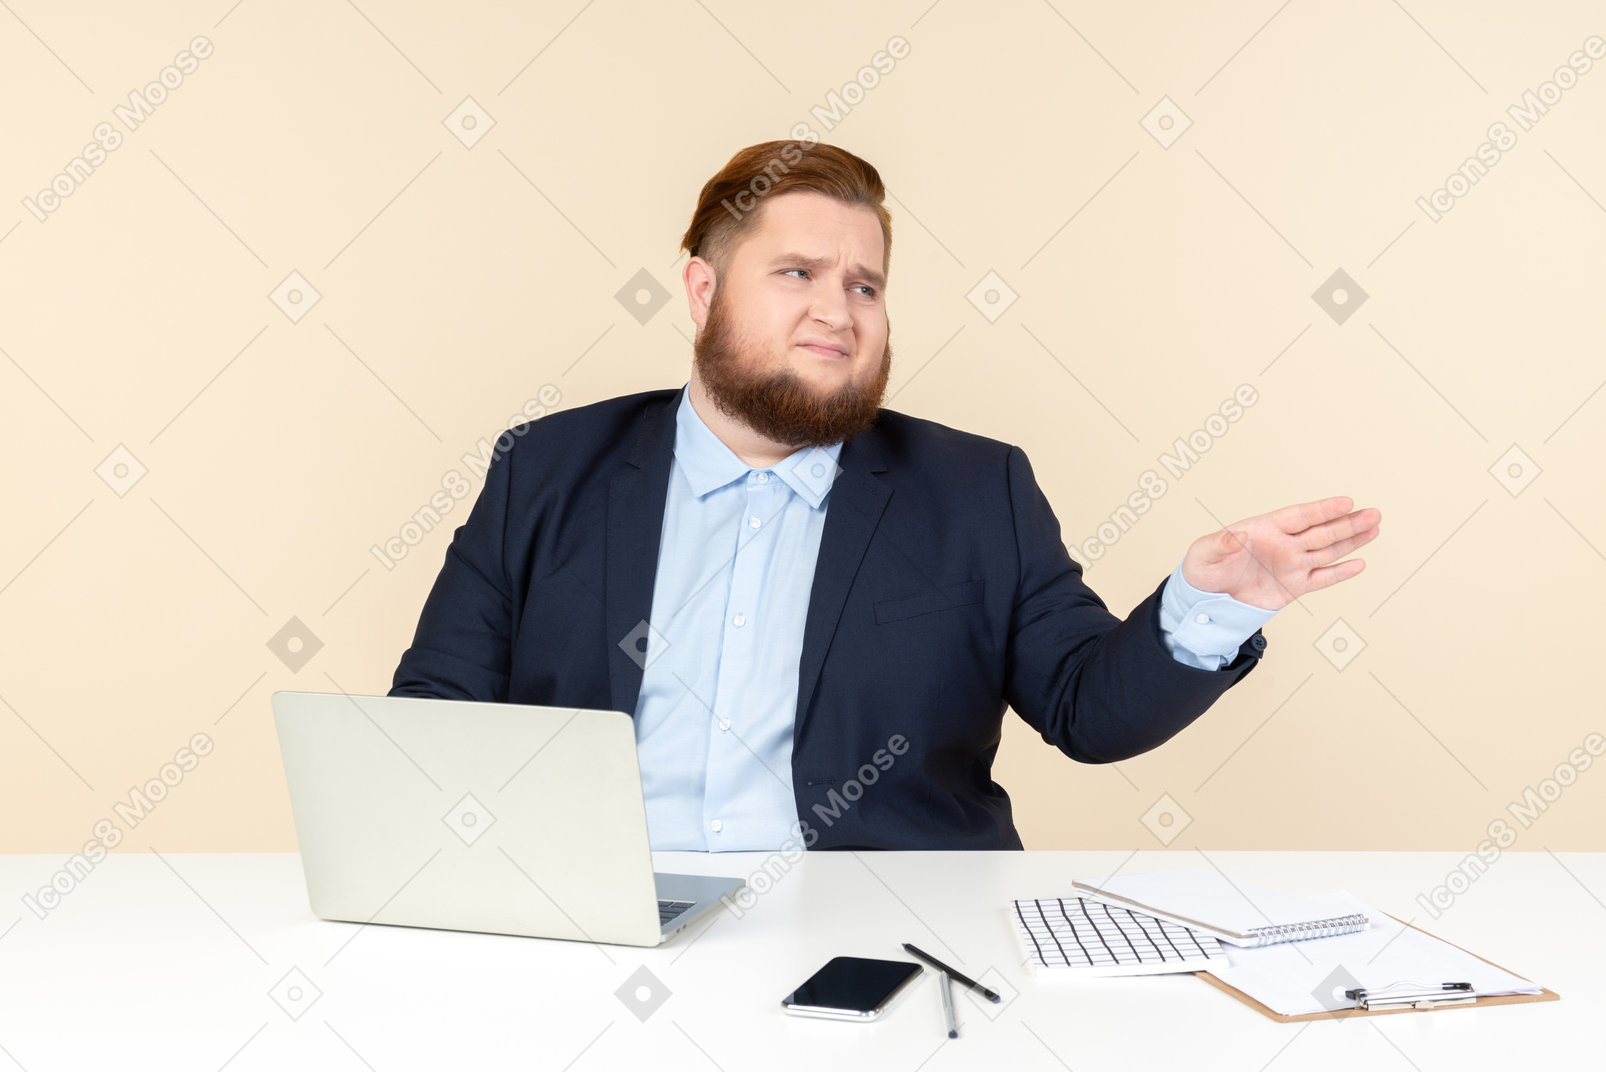 No le preocupa nada joven trabajador de oficina con sobrepeso sentado en el escritorio de la oficina